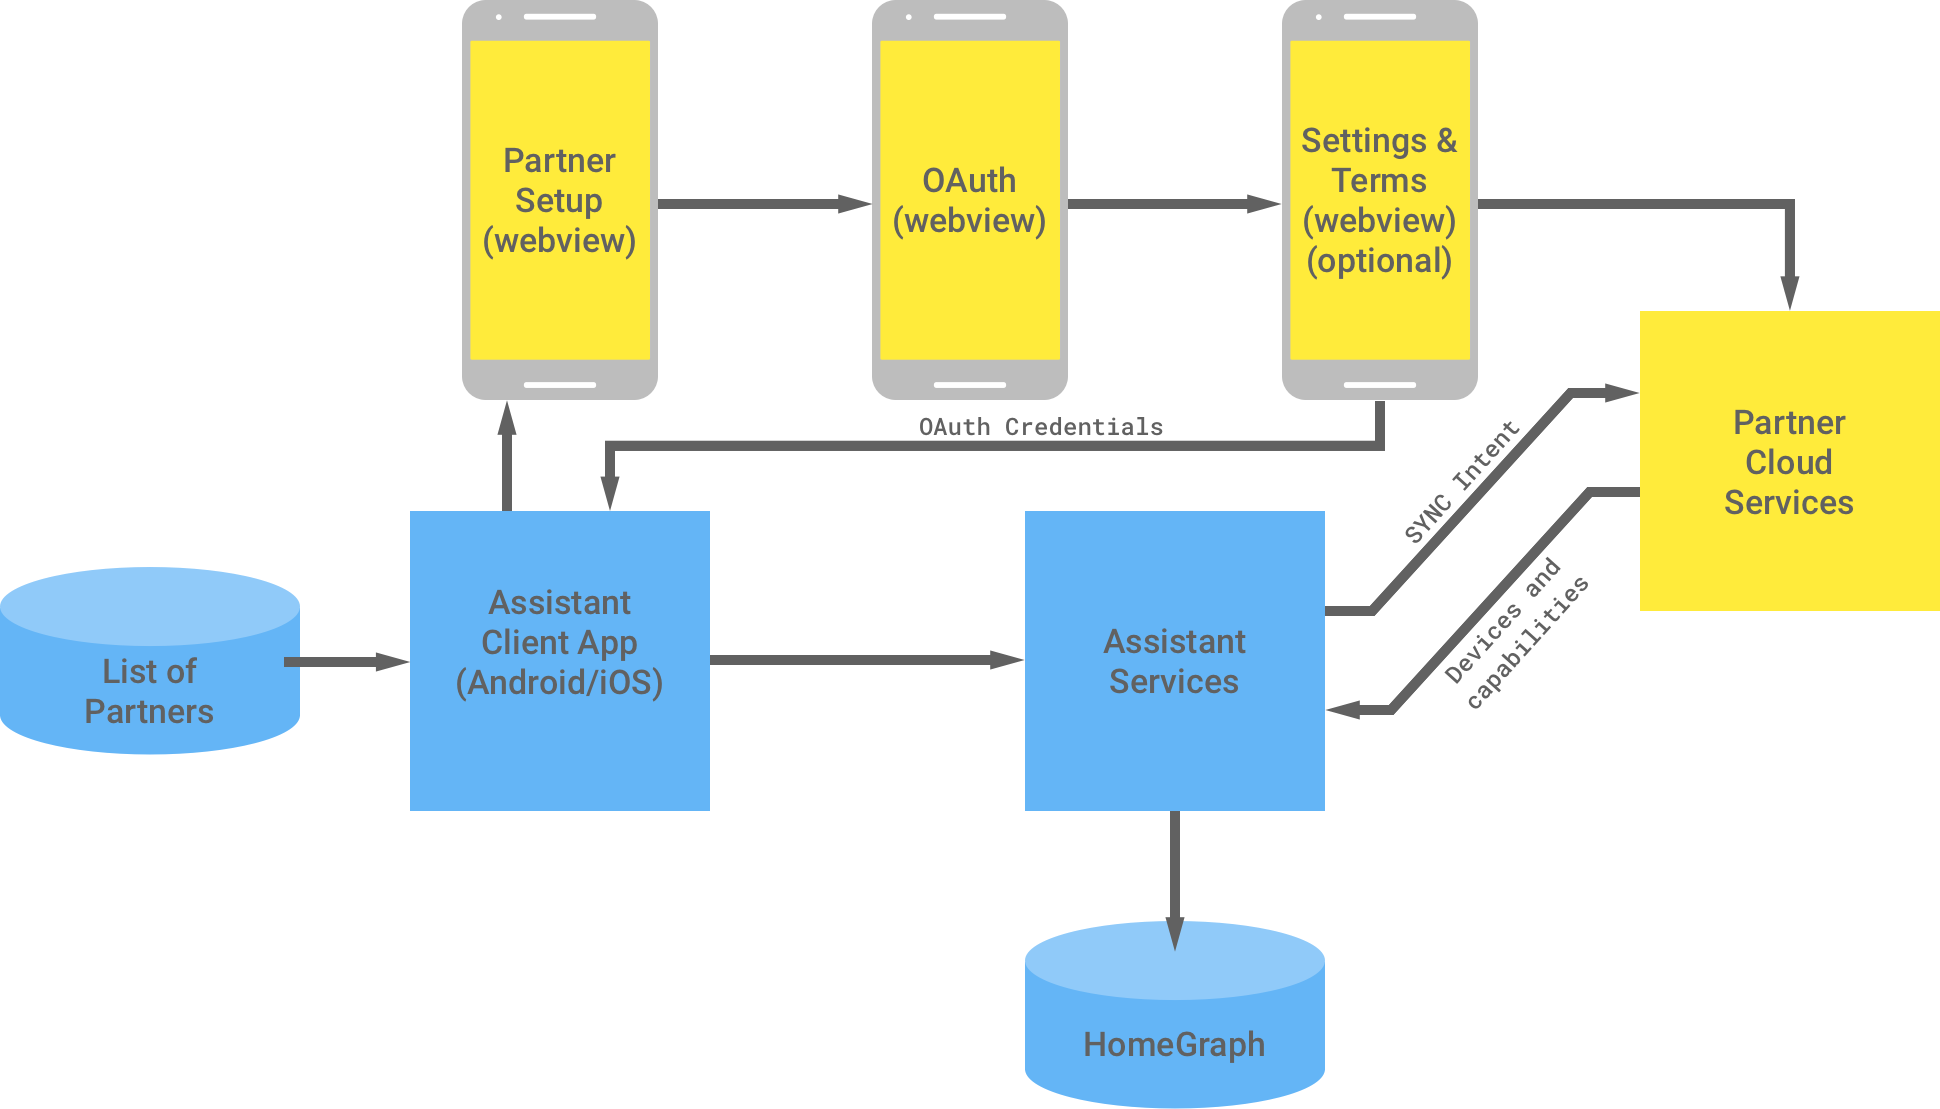 Esta figura mostra a interação entre a infraestrutura do Google
 e a do parceiro. Na infraestrutura do Google, há uma lista de parceiros disponíveis para o app cliente do Assistente, que flui para a infraestrutura do parceiro para concluir a autenticação OAuth. A autenticação OAuth do lado do parceiro consiste no WebView de configuração do parceiro, no WebView do OAuth, nas configurações opcionais e nos termos e nos serviços de nuvem do parceiro. A infraestrutura do parceiro
    retorna as credenciais do OAuth para o app cliente do Assistente. Os serviços
    em nuvem de parceiros enviam os dispositivos e recursos disponíveis para os serviços do Assistente,
    que armazenam as informações no Home Graph.